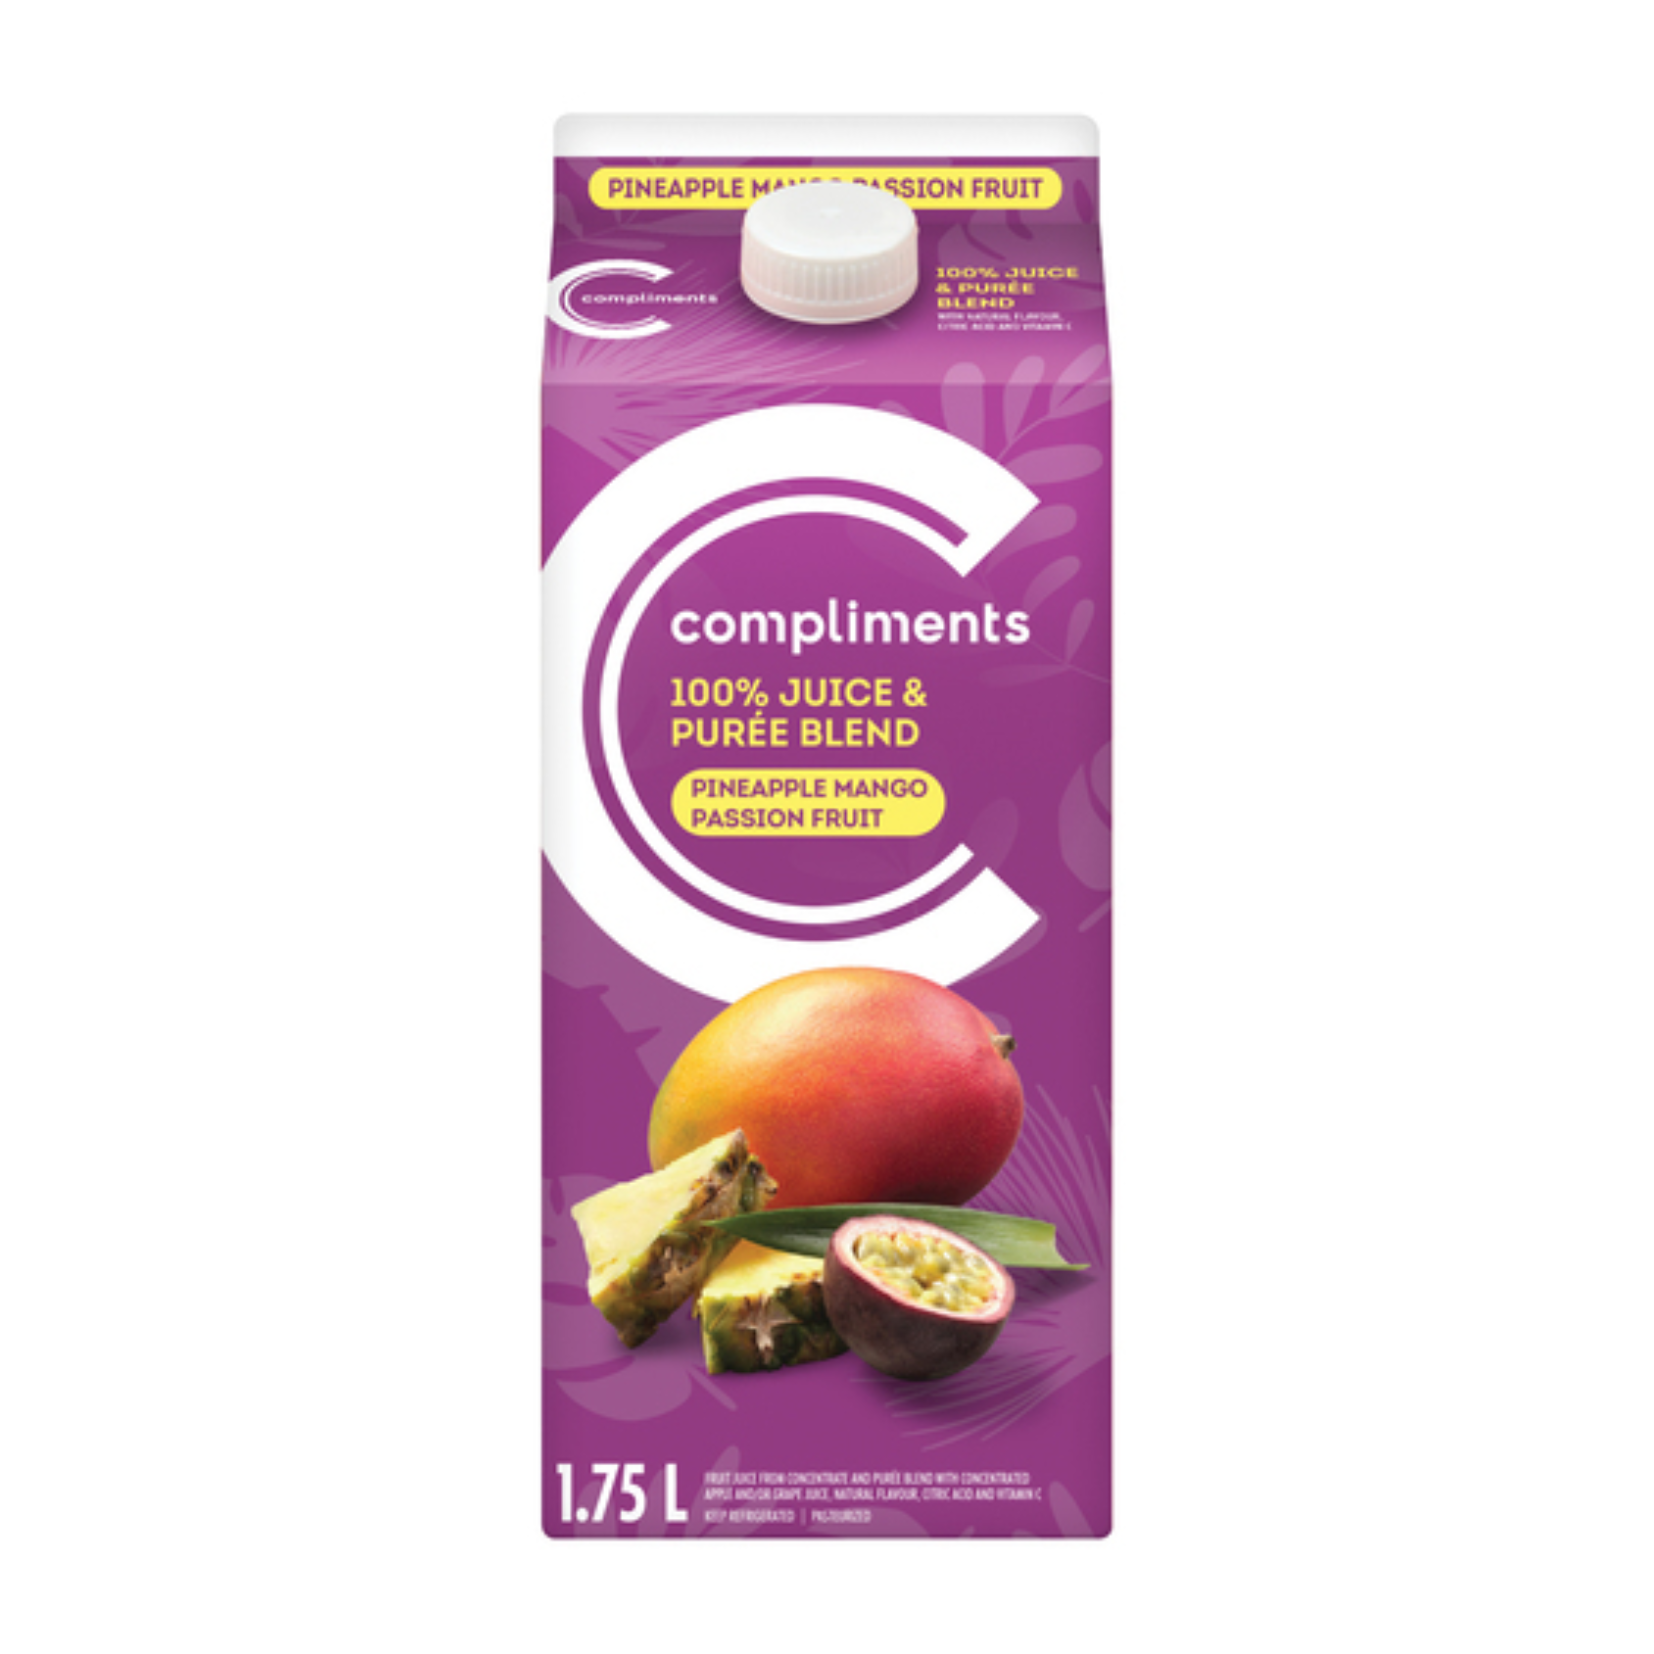 Compliments Pineapple Mango Passion Fruit Juice 1.75L